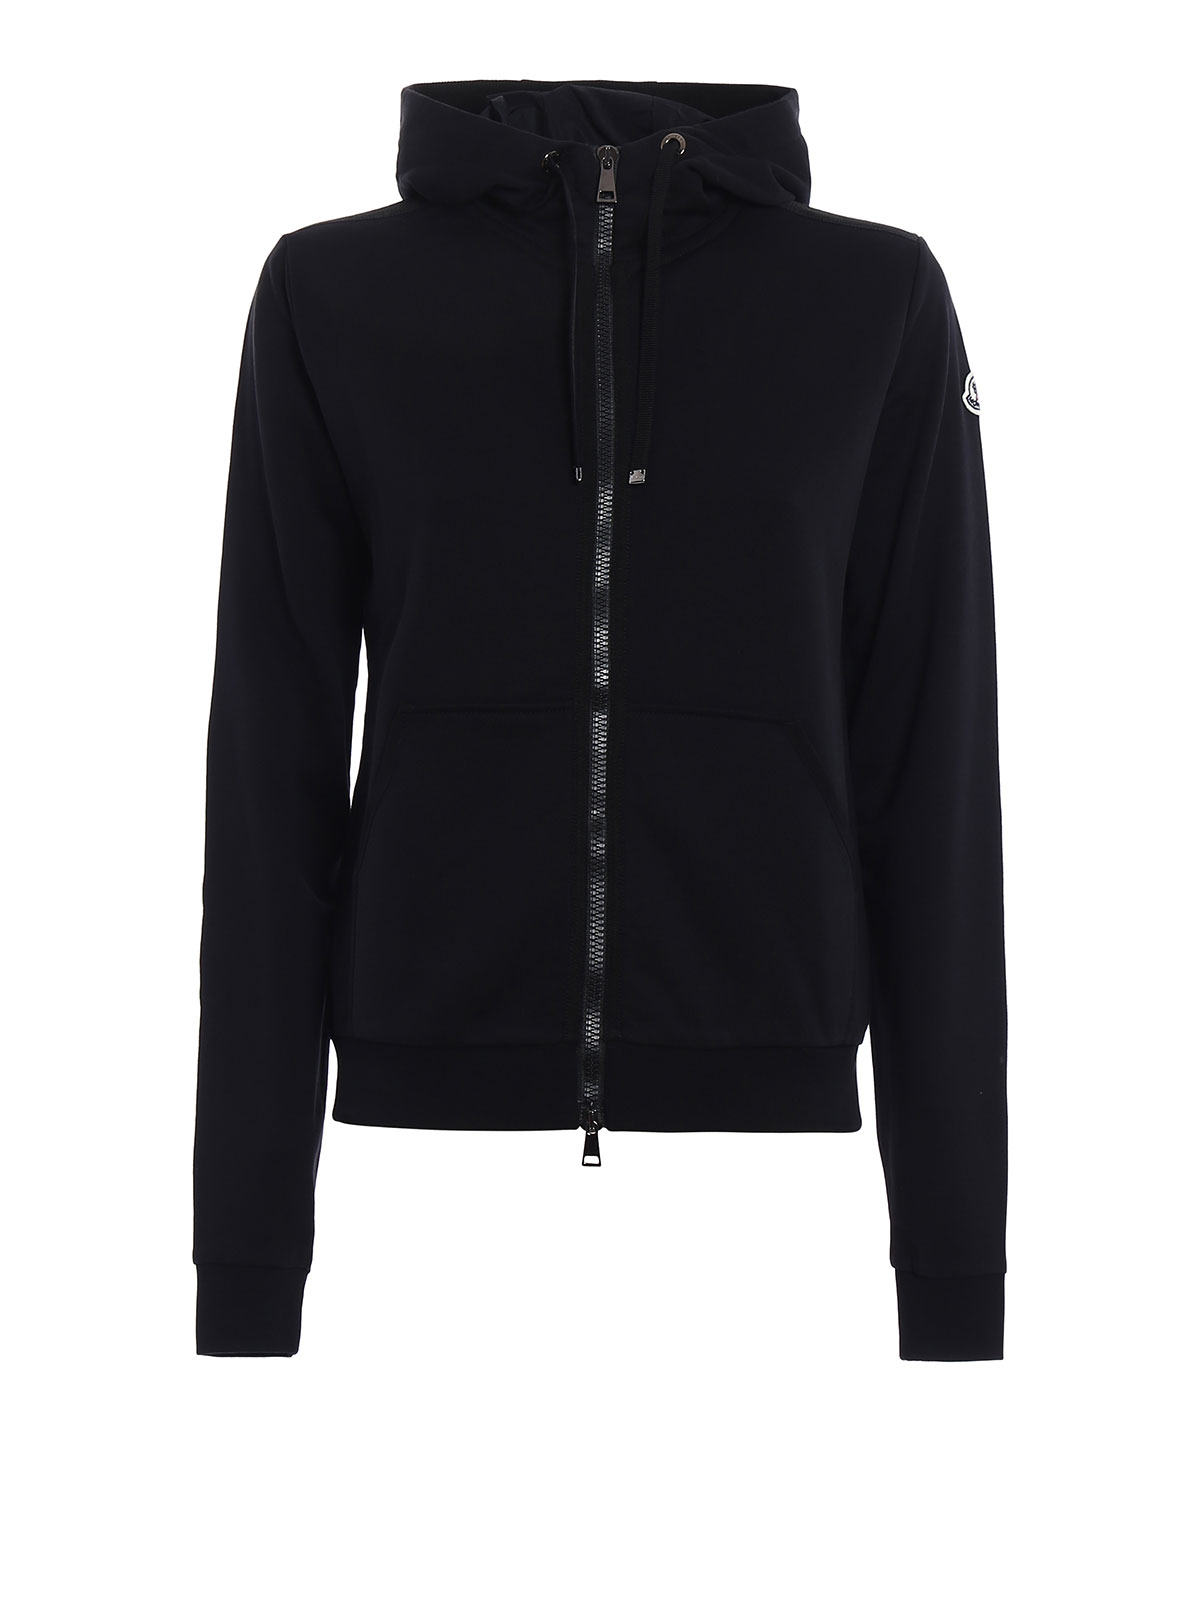 Full zip gros grain trim hoodie by Moncler - Sweatshirts & Sweaters | iKRIX